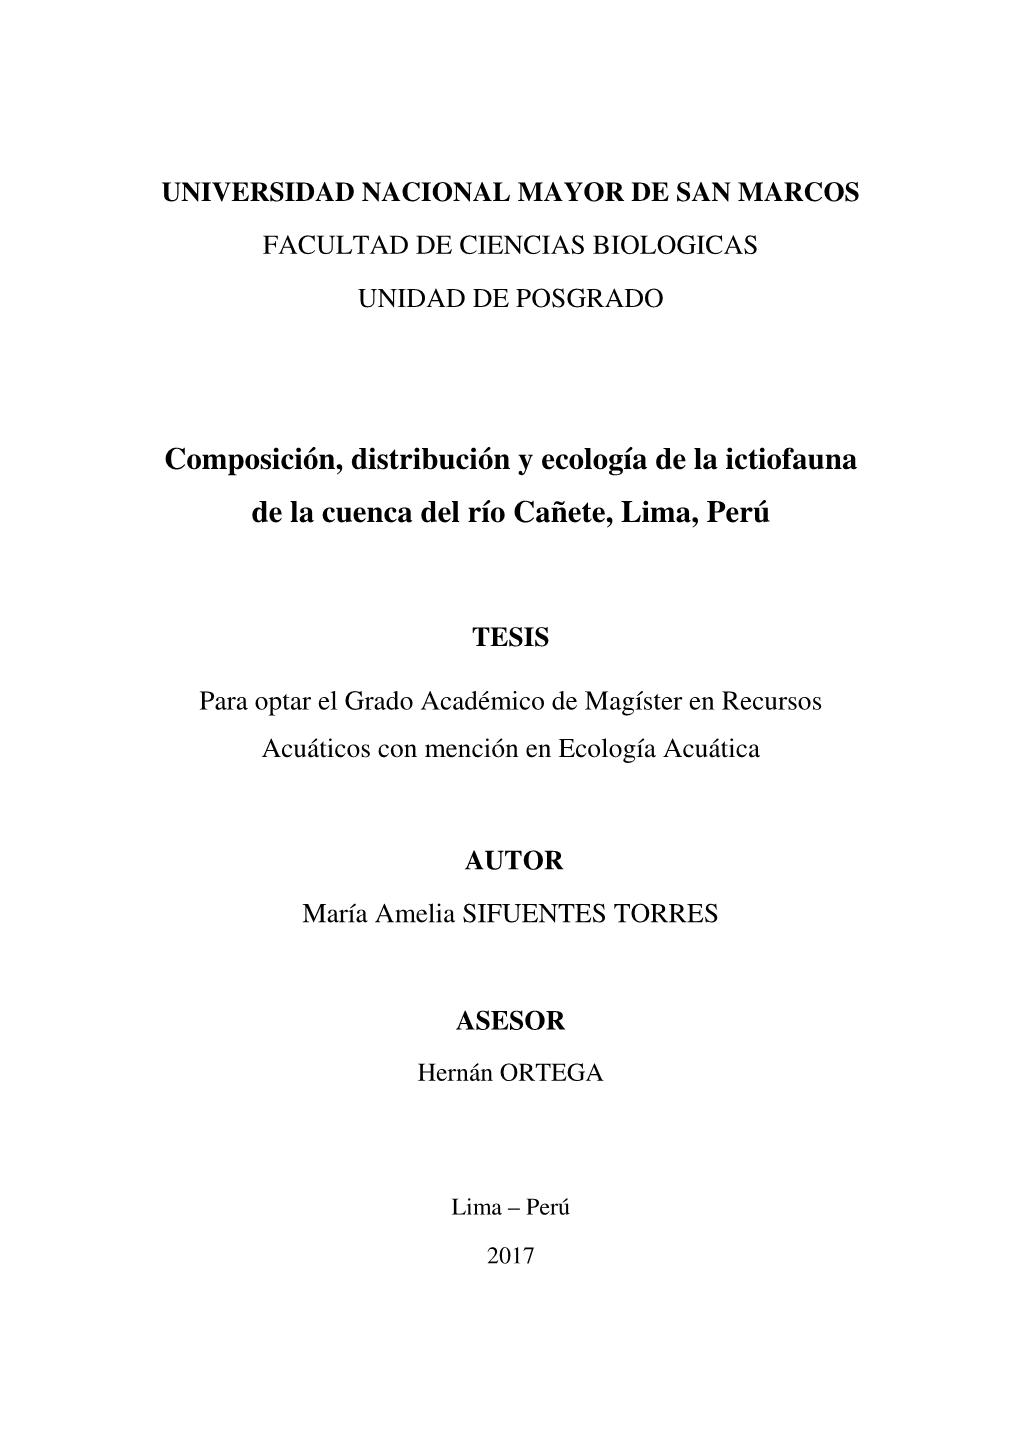 Composición, Distribución Y Ecología De La Ictiofauna De La Cuenca Del Río Cañete, Lima, Perú